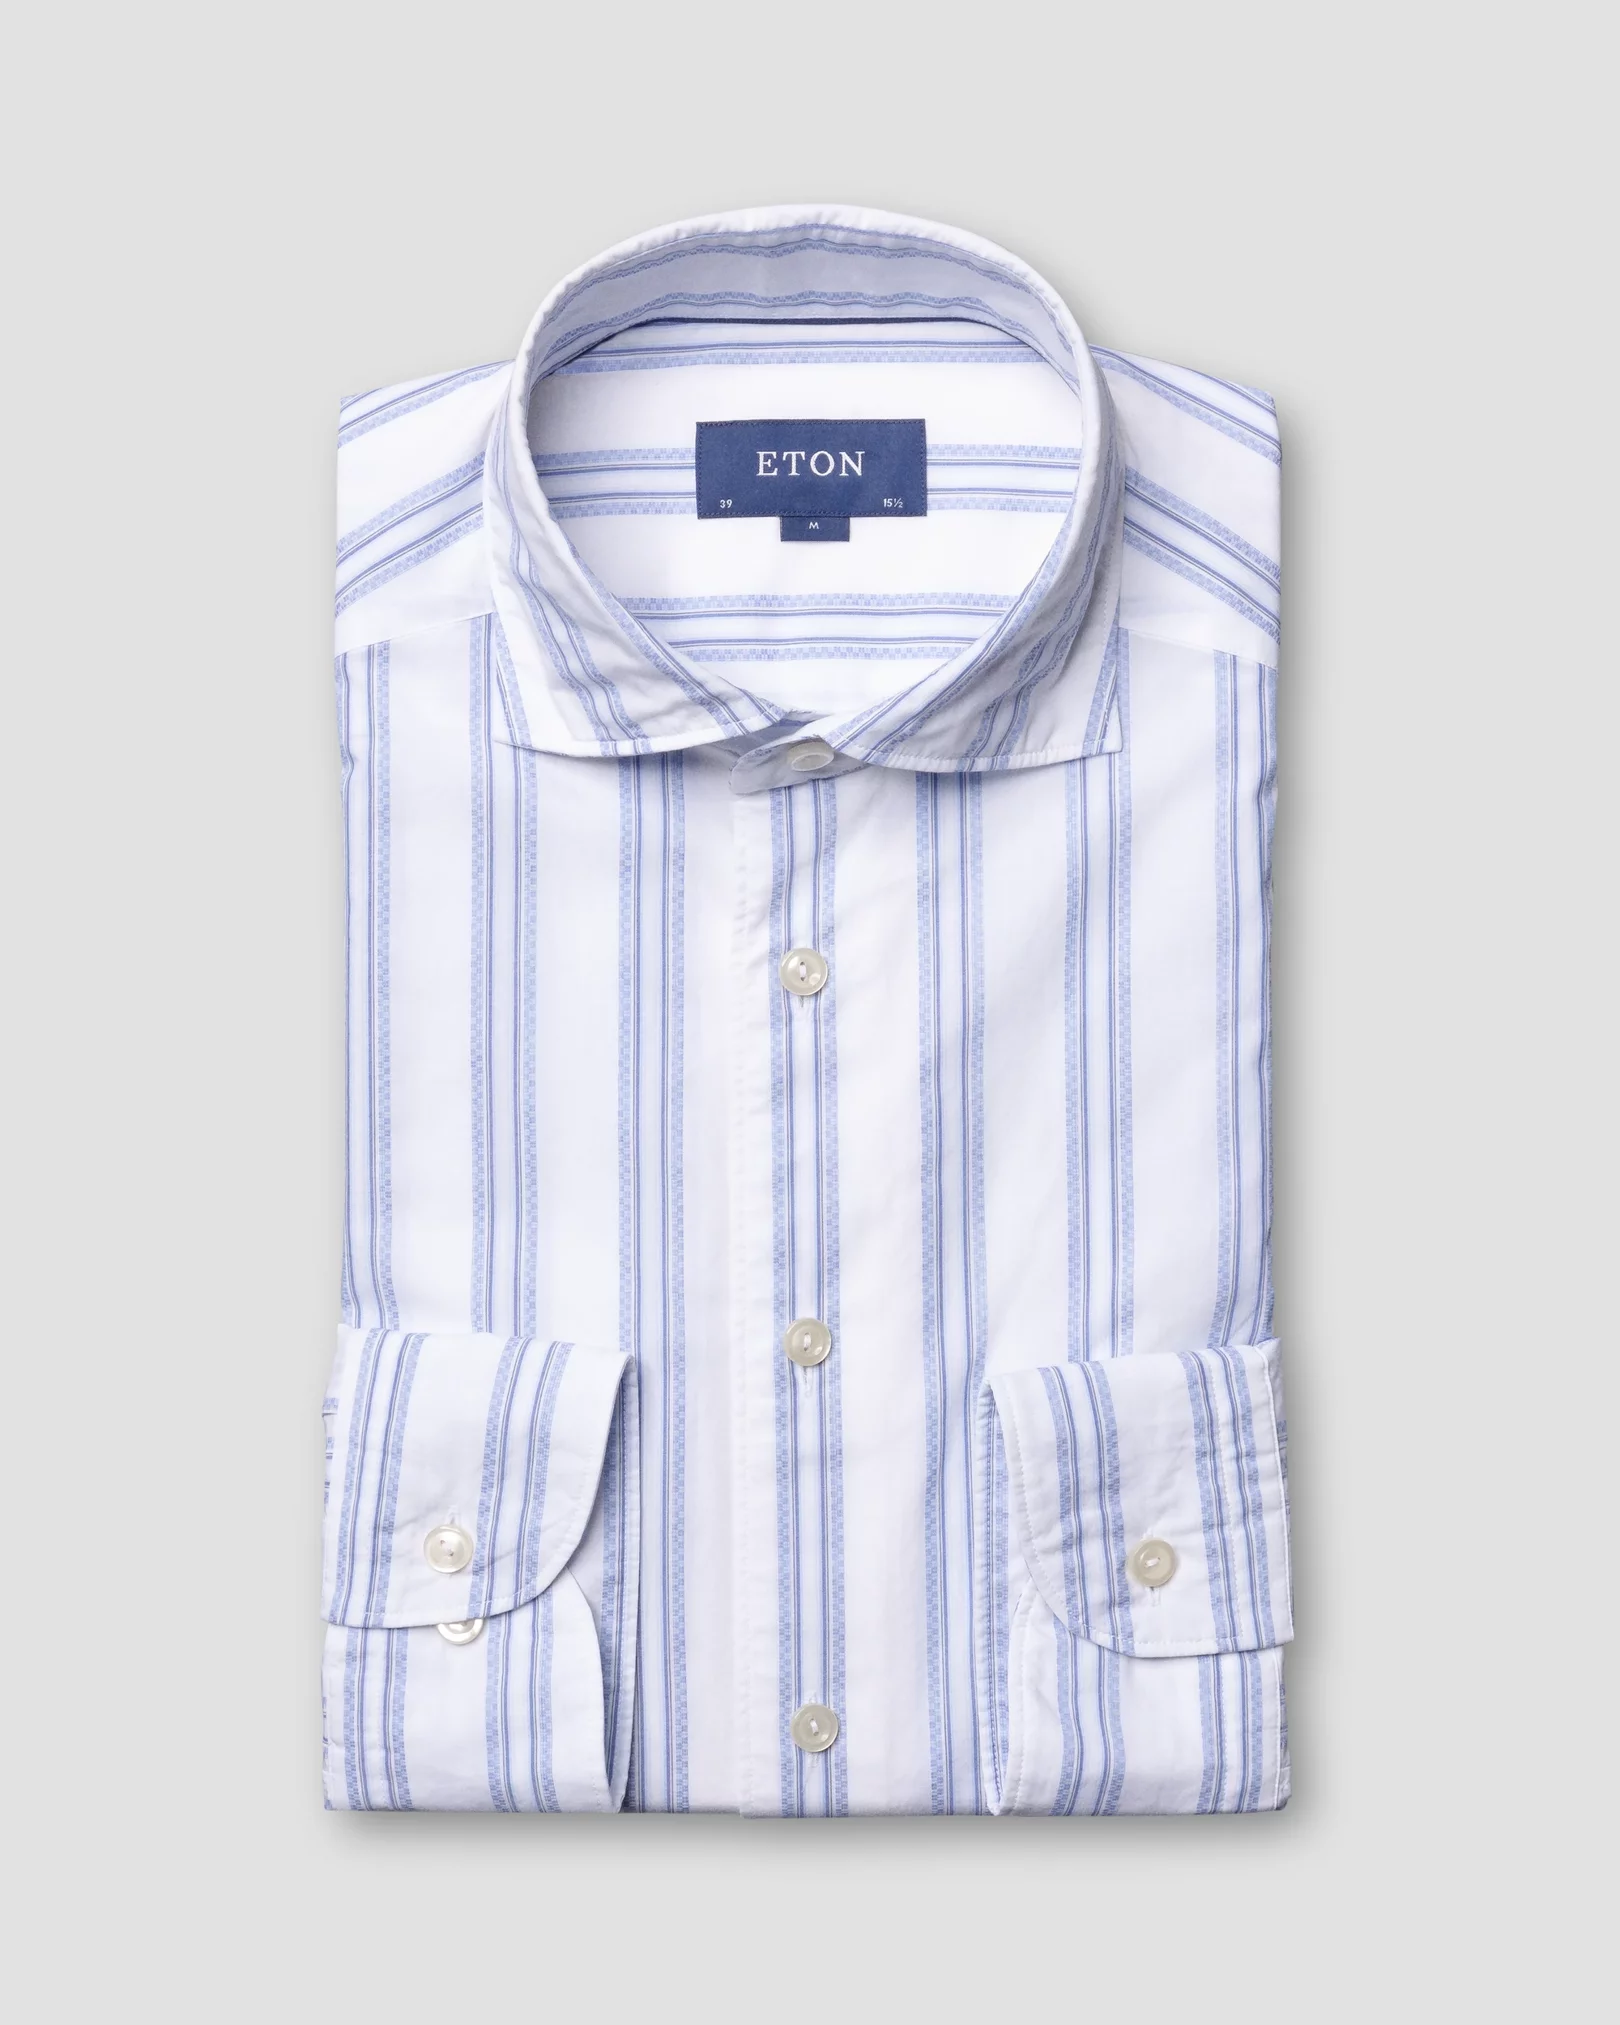 Eton - two blue striped shirt soft